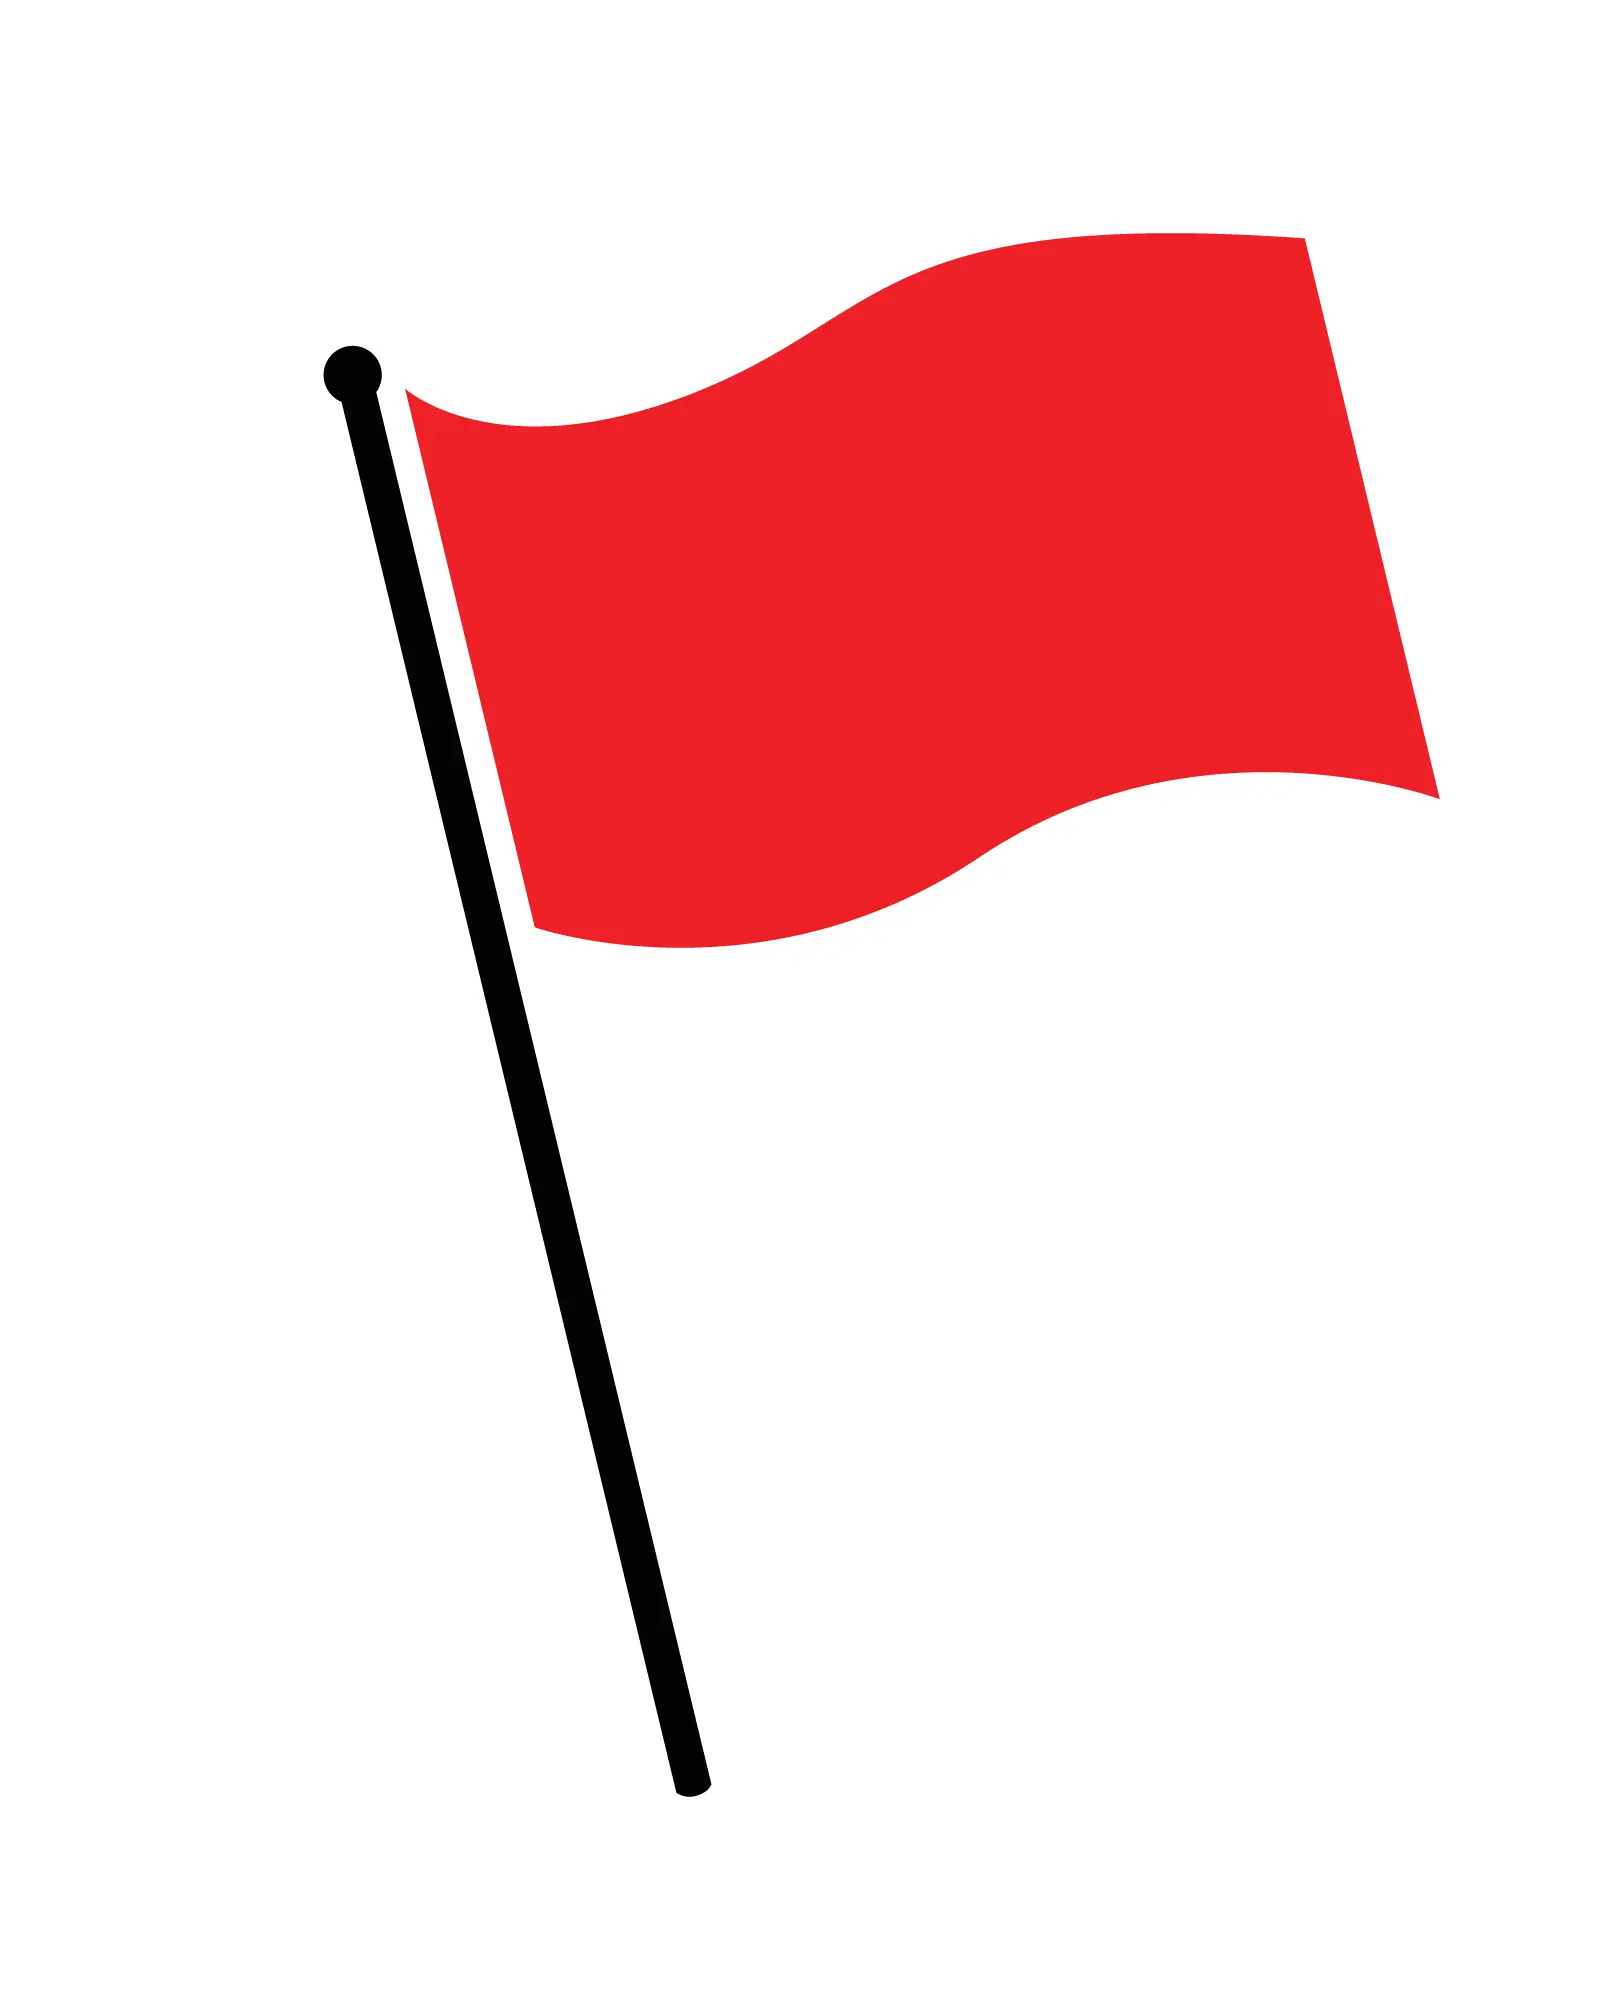 Bilde av rødt flagg